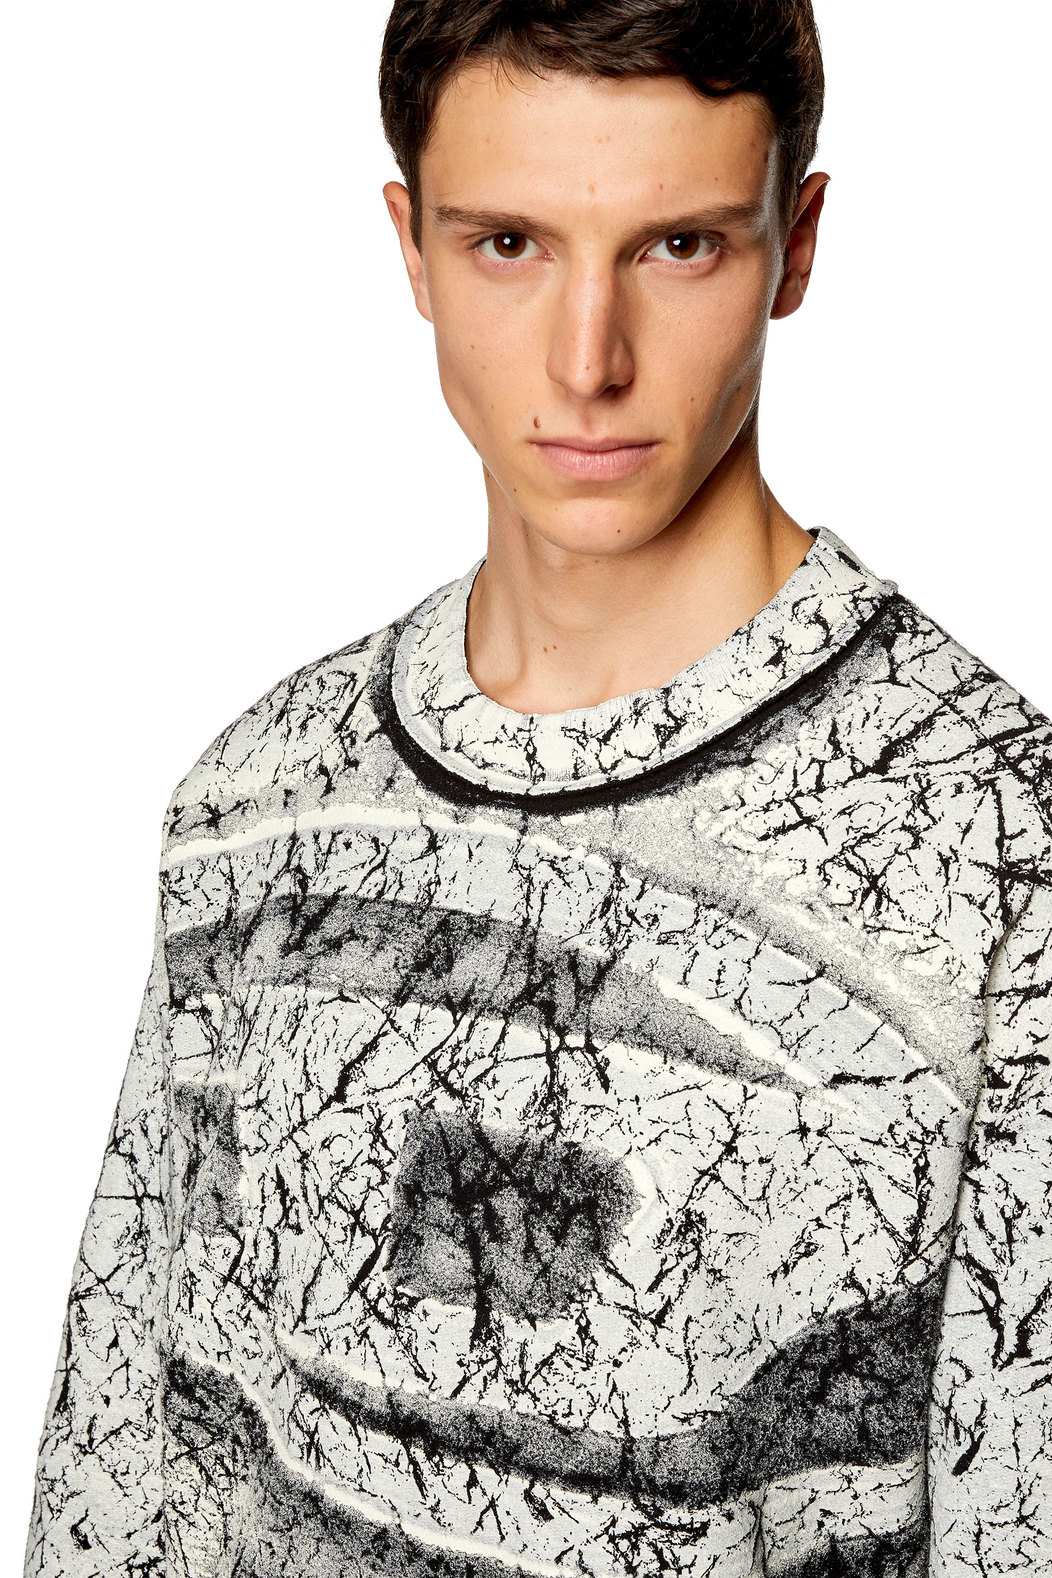 Sweatshirt with cracked coating